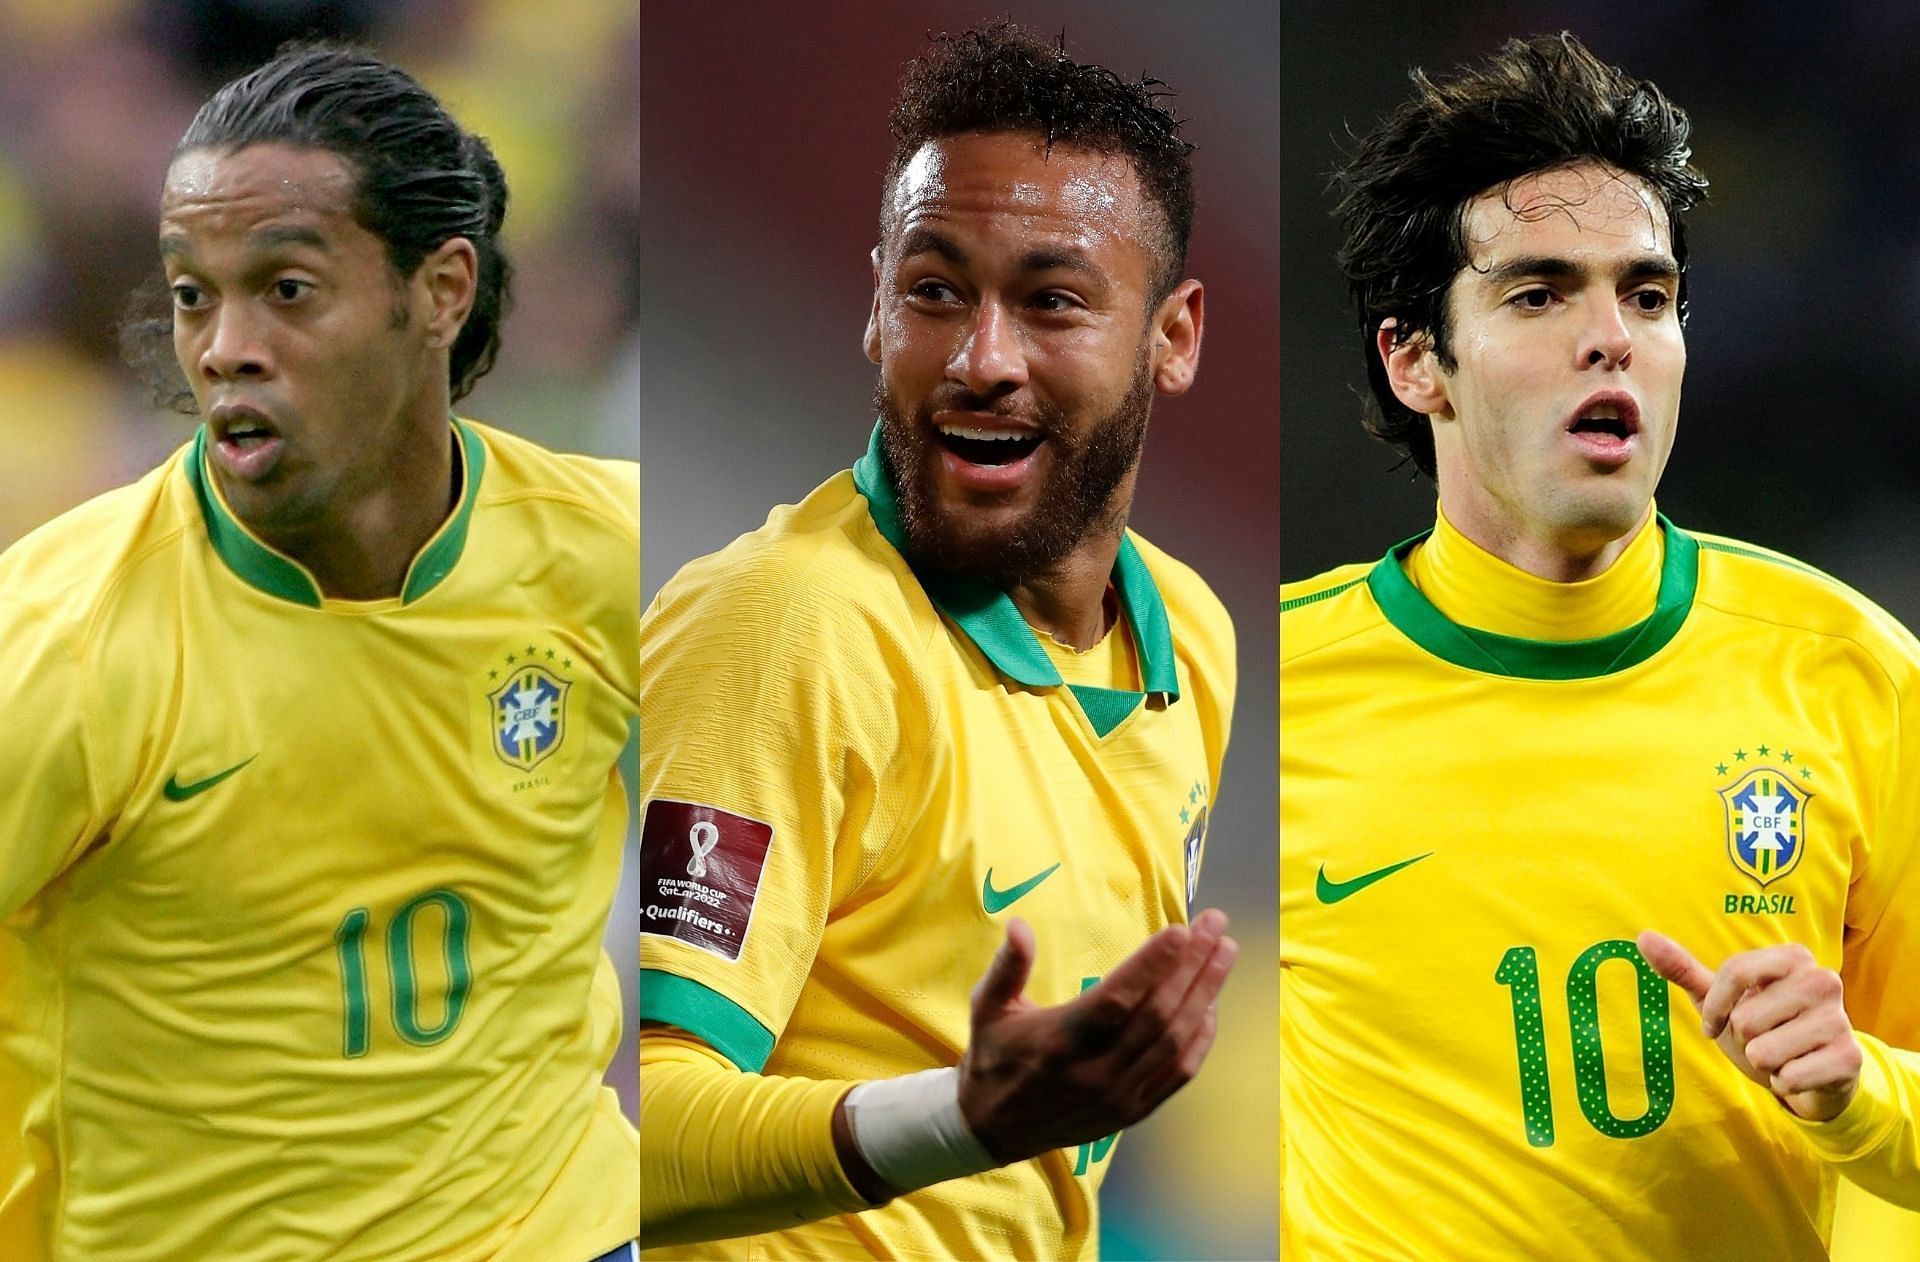 Kaka 2é, Willian 4é… les 5 Brésiliens ayant marqué le plus de buts en UEFA Champions League